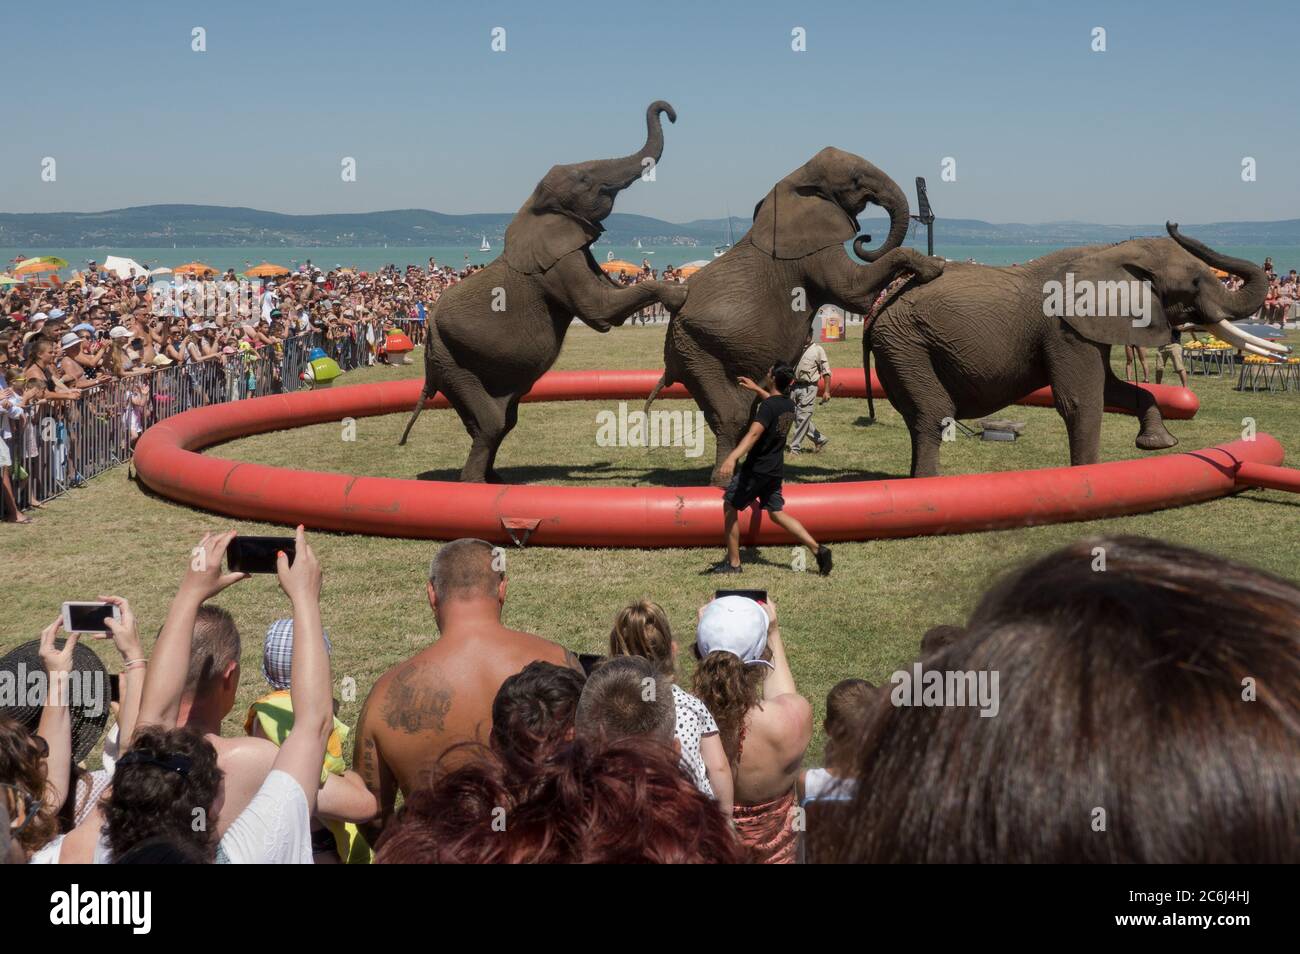 Balatonlelle. 10 juillet 2020. Les éléphants du Cirque national hongrois se produit lors d'un événement promotionnel à Balatonlelle, en Hongrie, le 10 juillet 2020. Crédit: Attila Volgyi/Xinhua/Alay Live News Banque D'Images